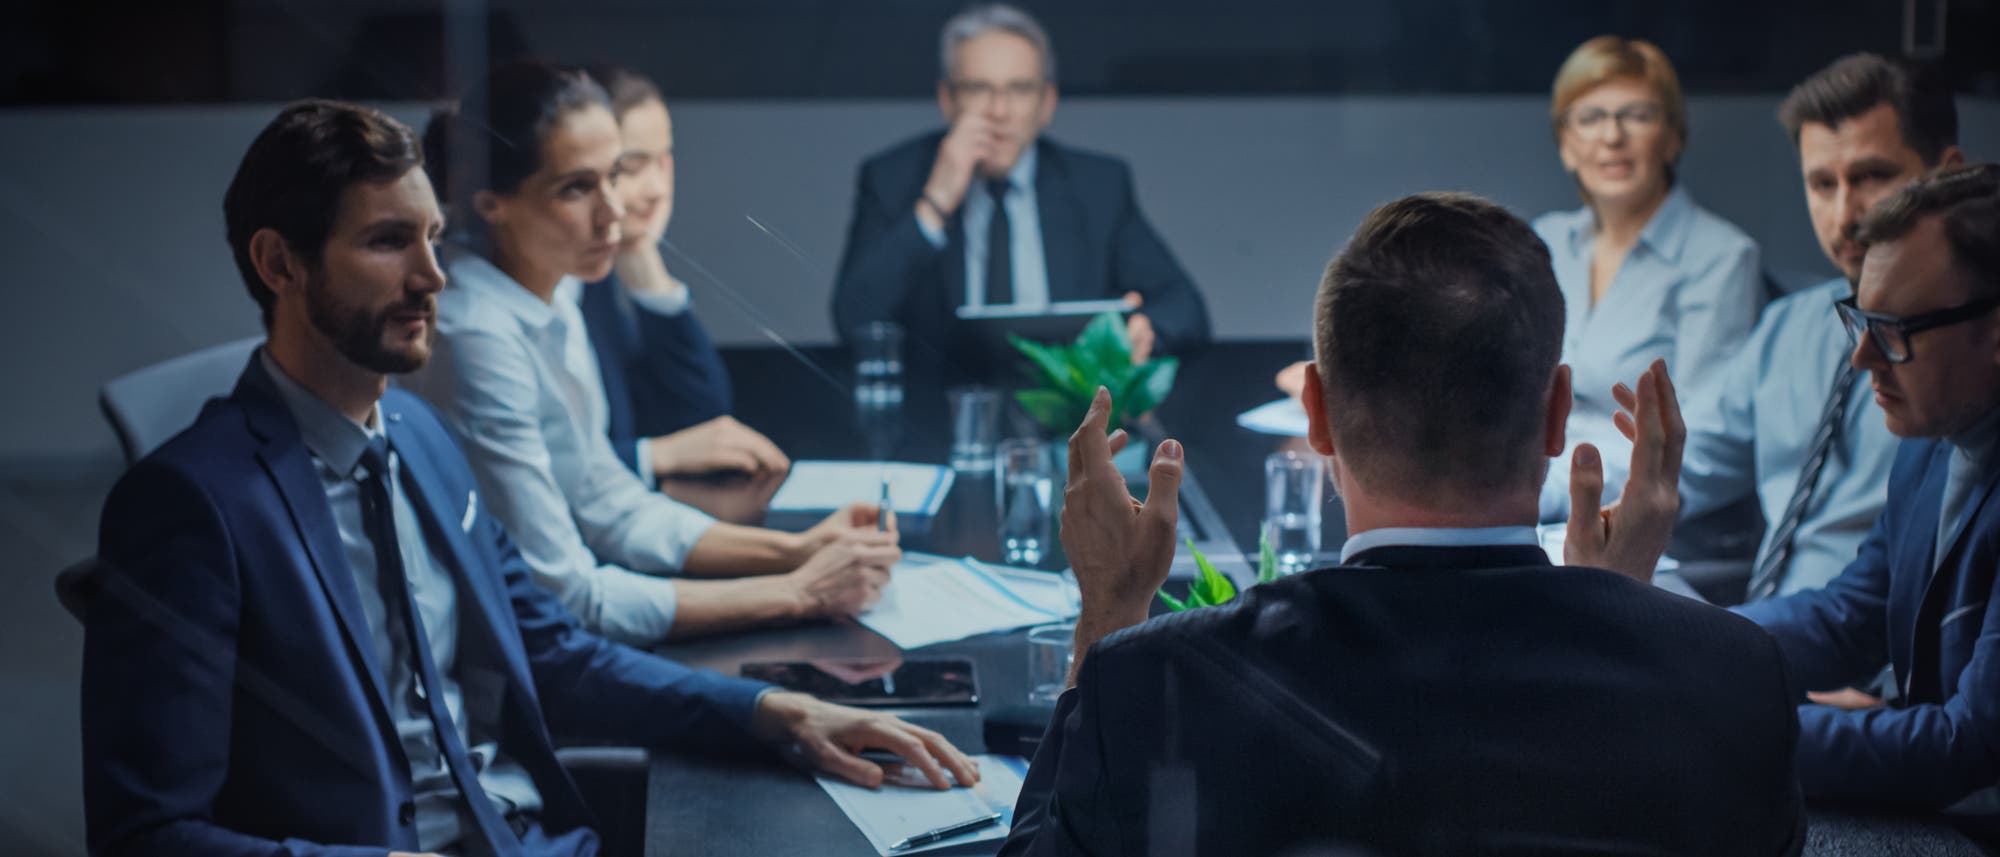 Eine Gruppe Geschäftsleute sitzt in einem Meeting zusammen